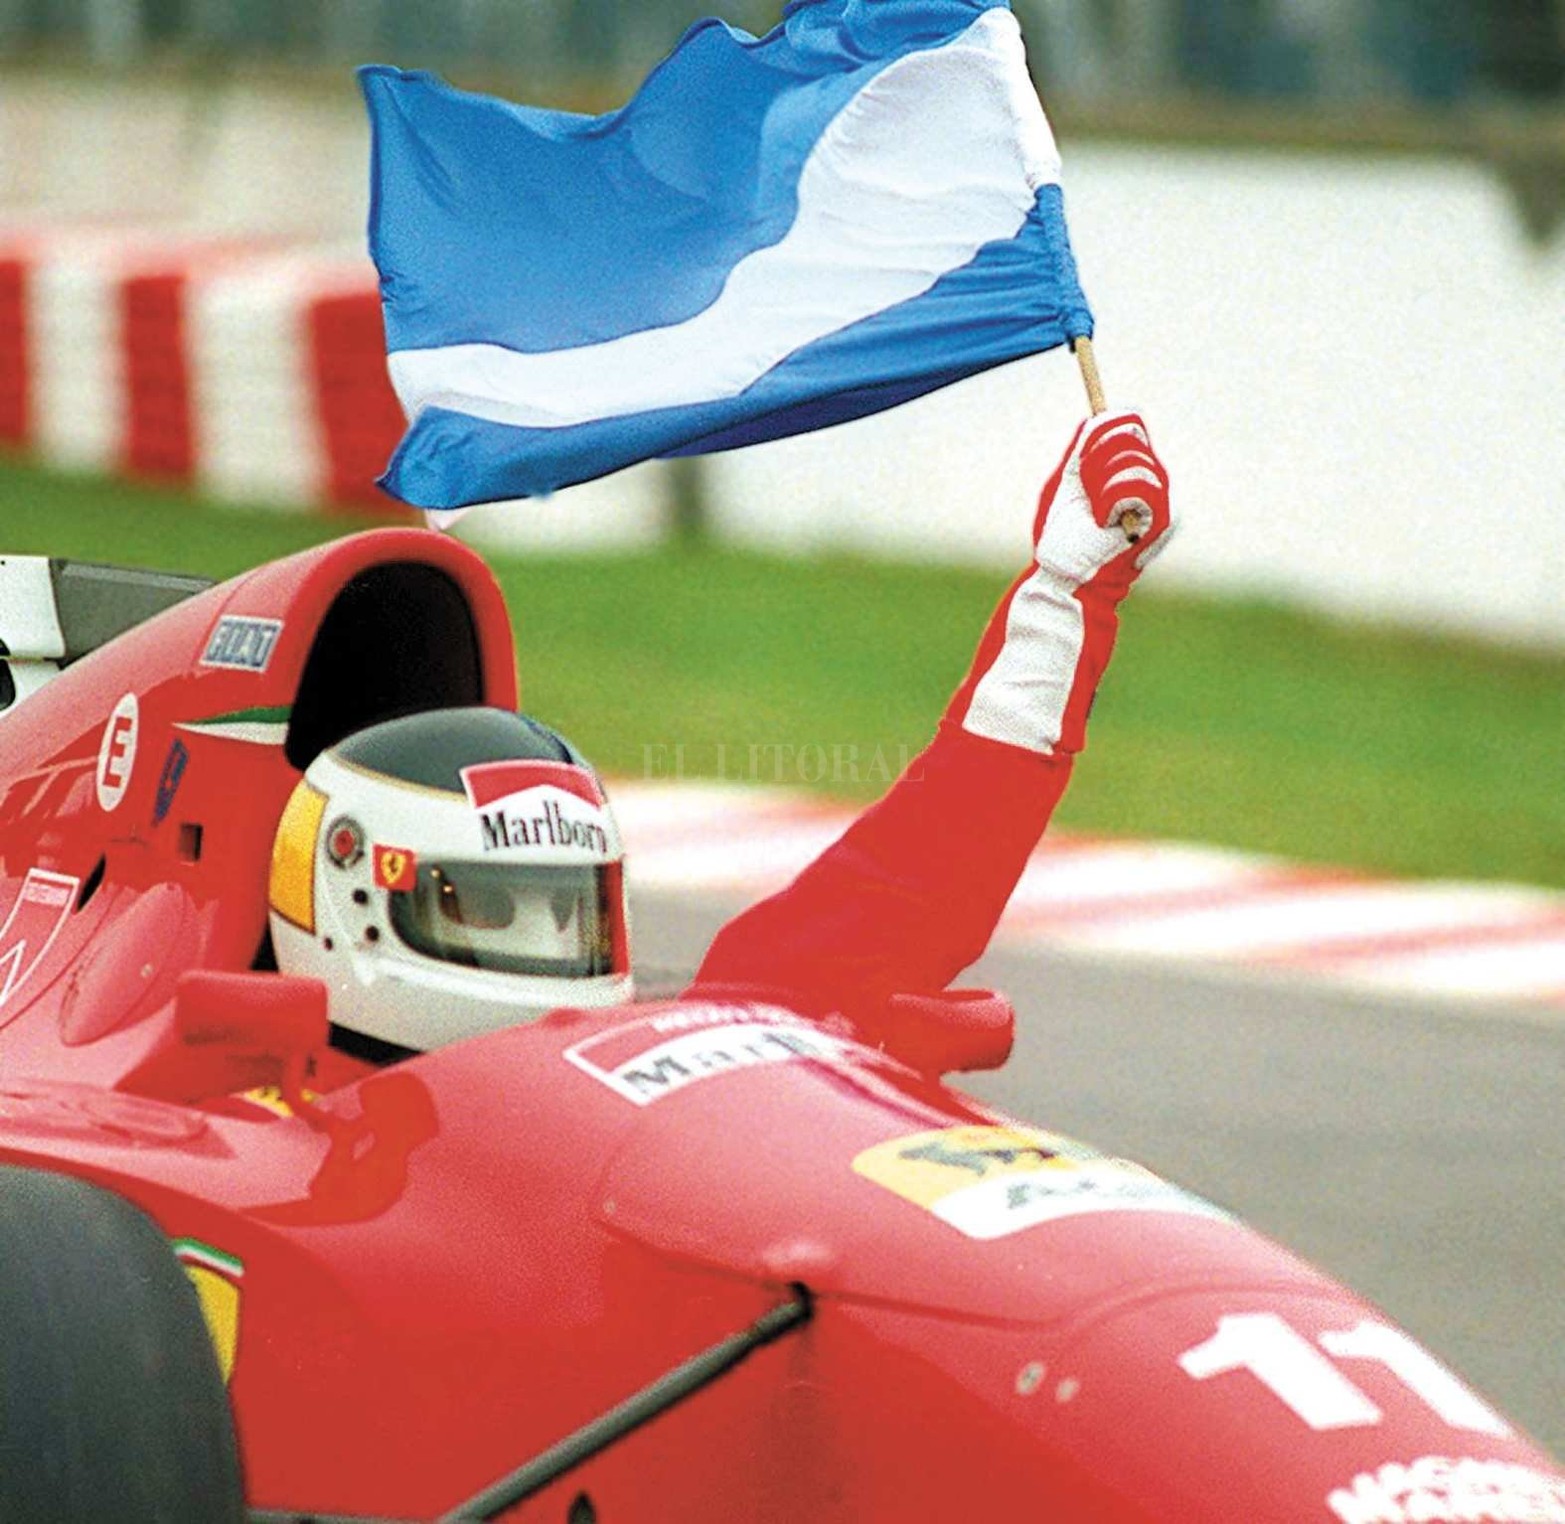 El 6 de abril de 1995 regresaba la Fórmula 1 a la Argentina y Reutemann vovía a manejar una Ferrari con el número 11, el mismo que usaba cuando corría para el "Cavallino Rampante".